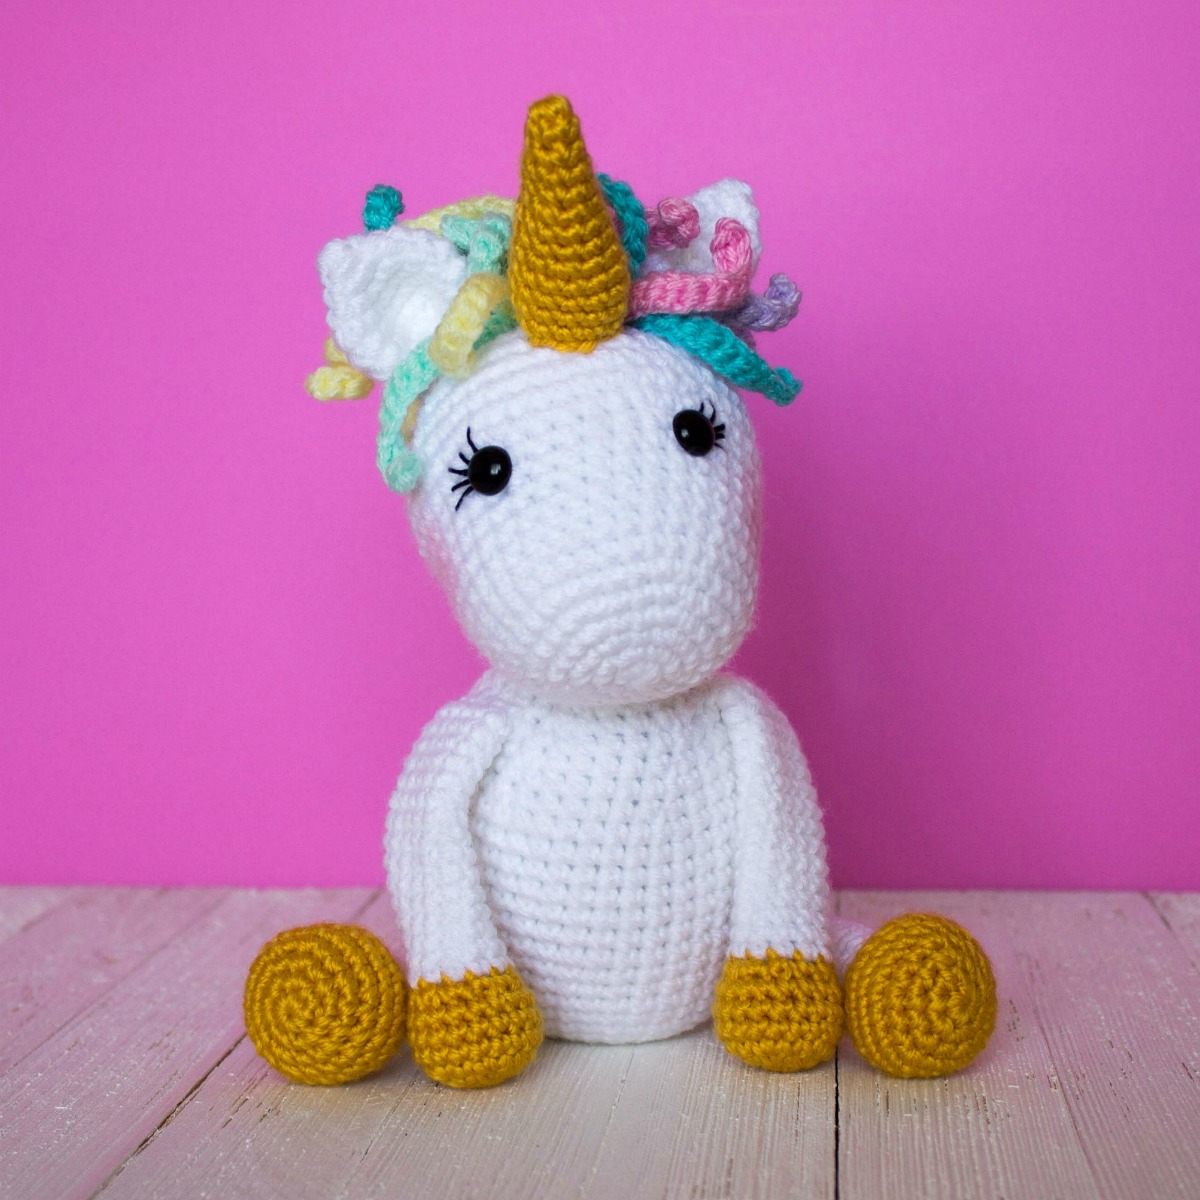 Free Unicorn Crochet Pattern Free Crochet Unicorn Pattern Thefriendlyredfox